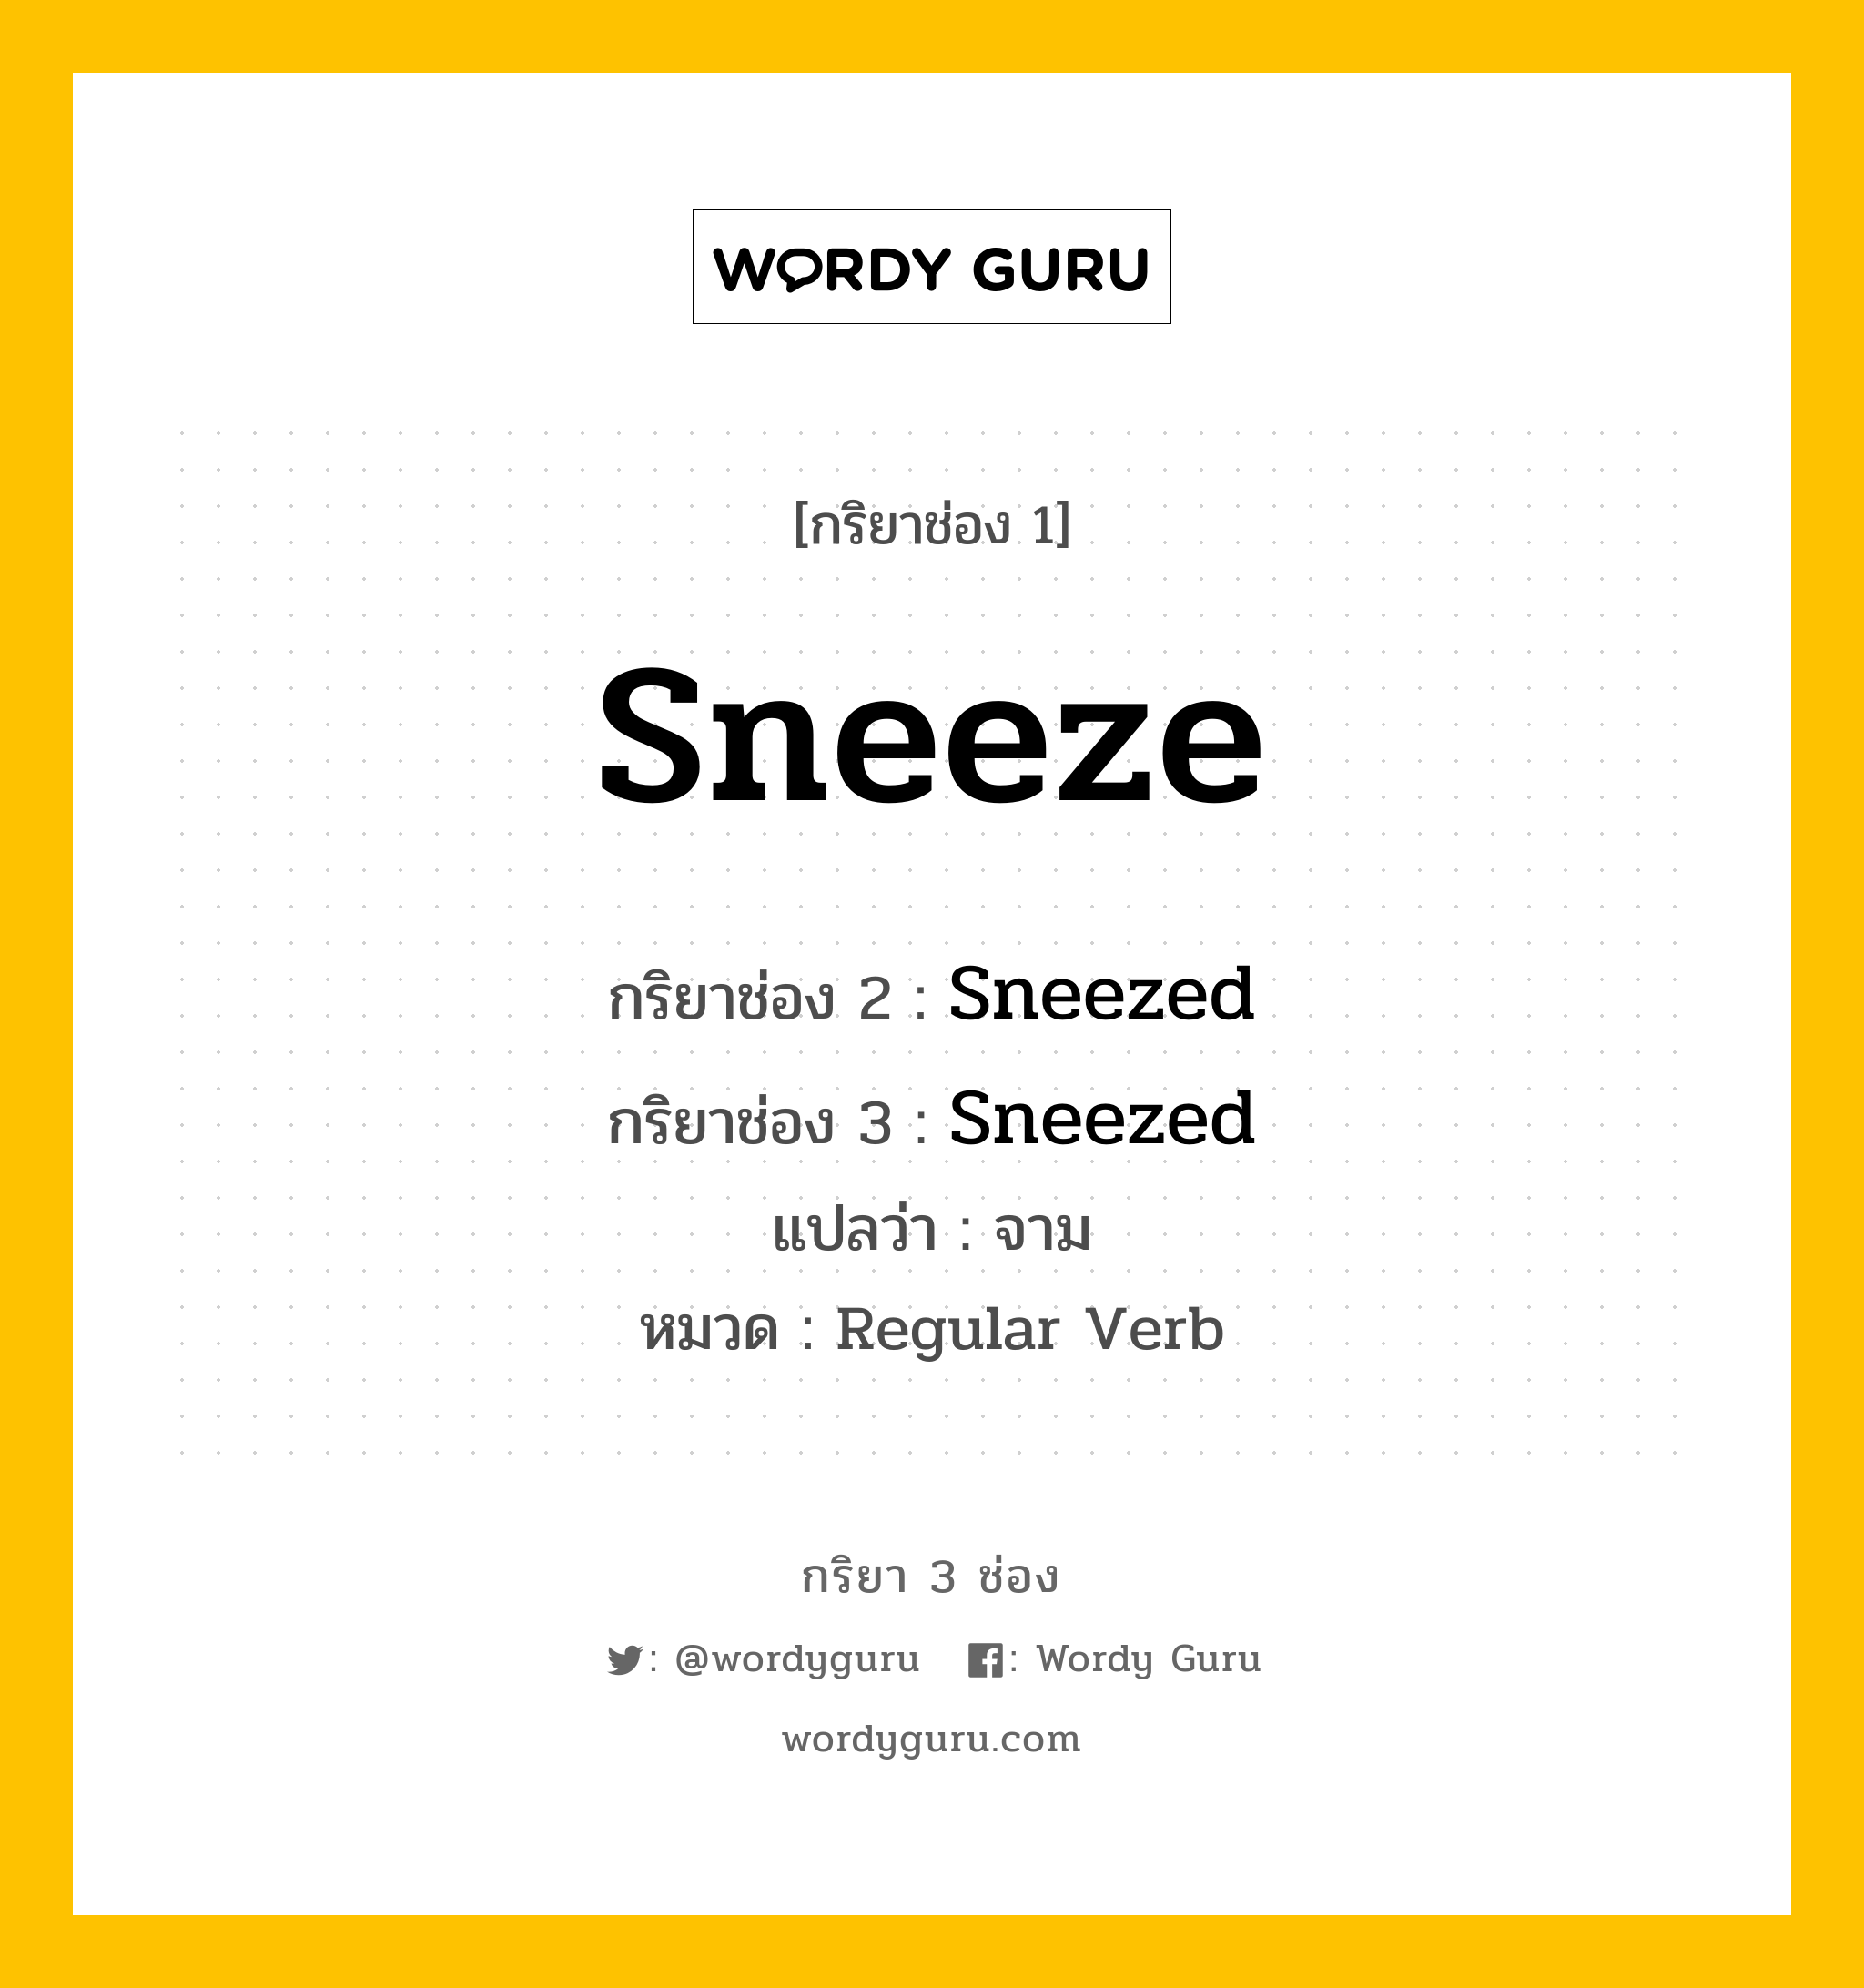 กริยา 3 ช่อง: Sneeze ช่อง 2 Sneeze ช่อง 3 คืออะไร, กริยาช่อง 1 Sneeze กริยาช่อง 2 Sneezed กริยาช่อง 3 Sneezed แปลว่า จาม หมวด Regular Verb หมวด Regular Verb